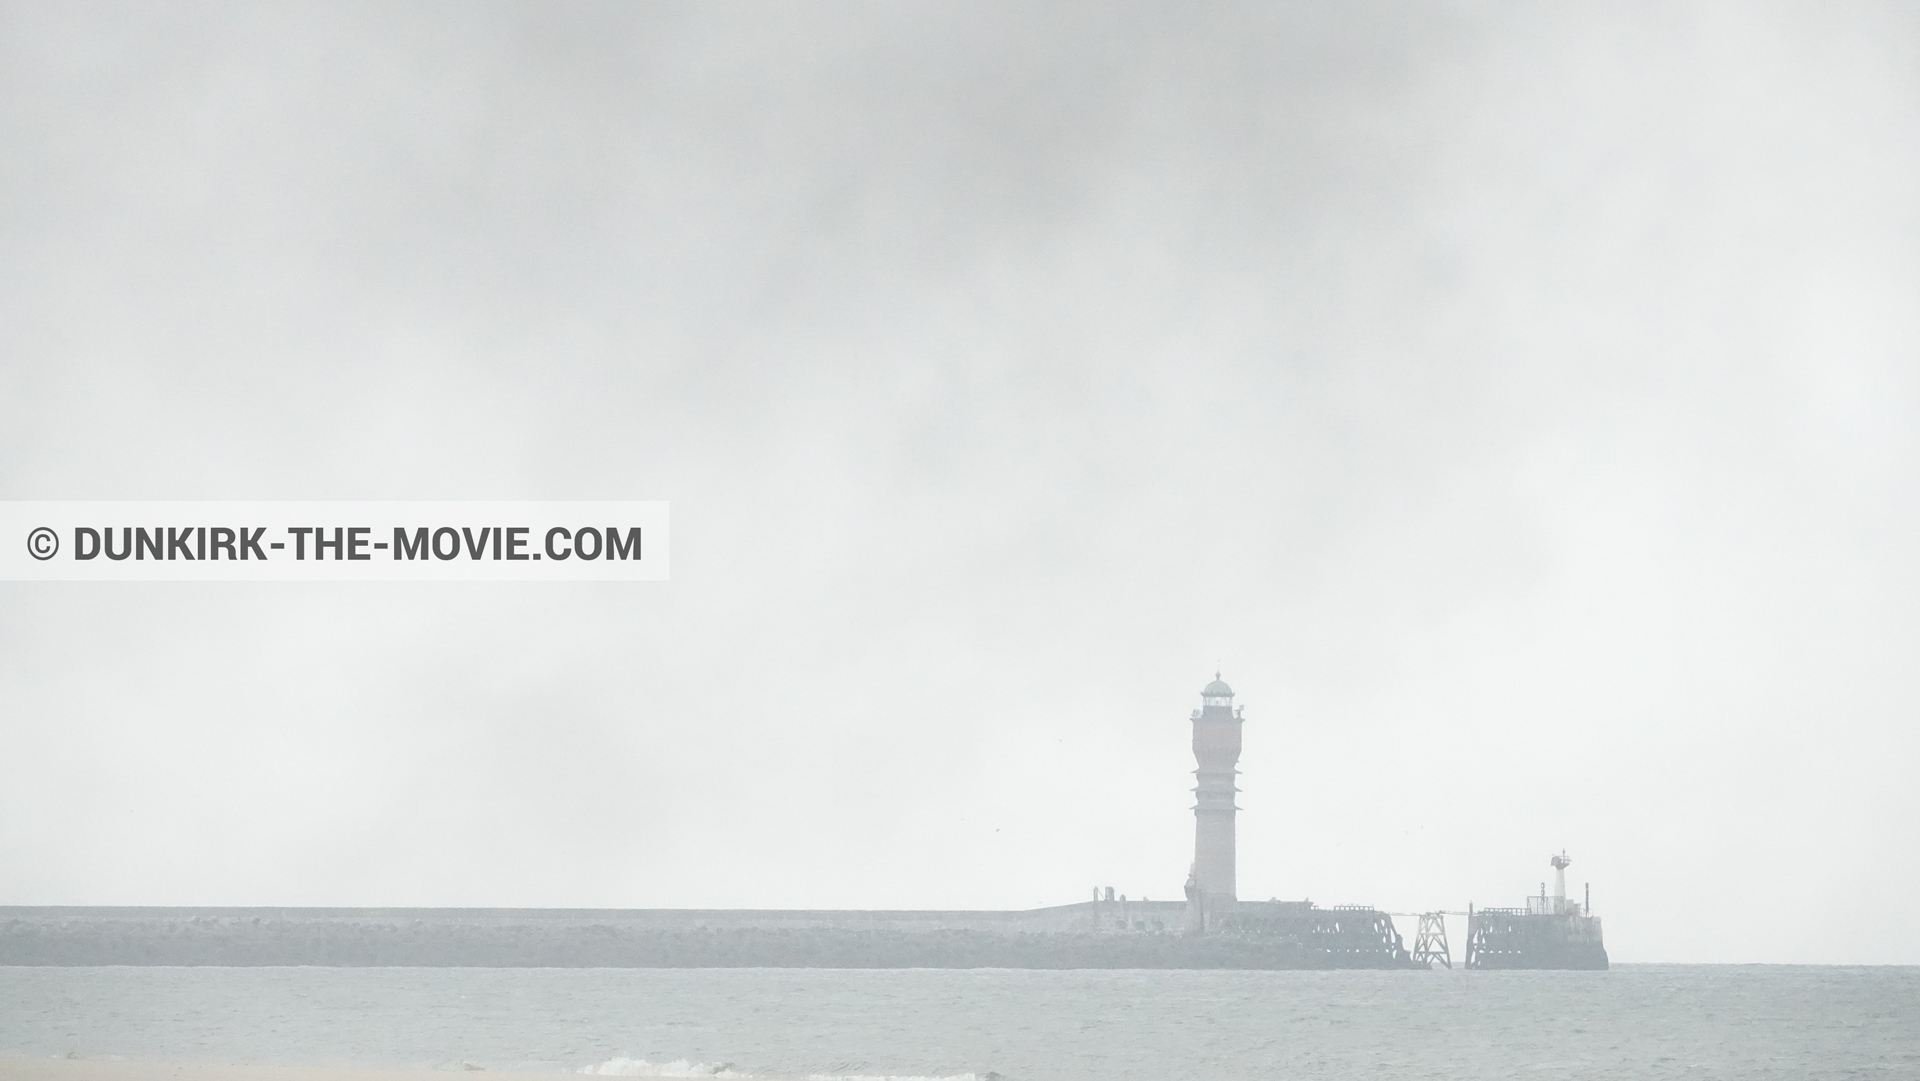 Fotos con humo negro, faro de Saint-Pol-sur-Mer,  durante el rodaje de la película Dunkerque de Nolan